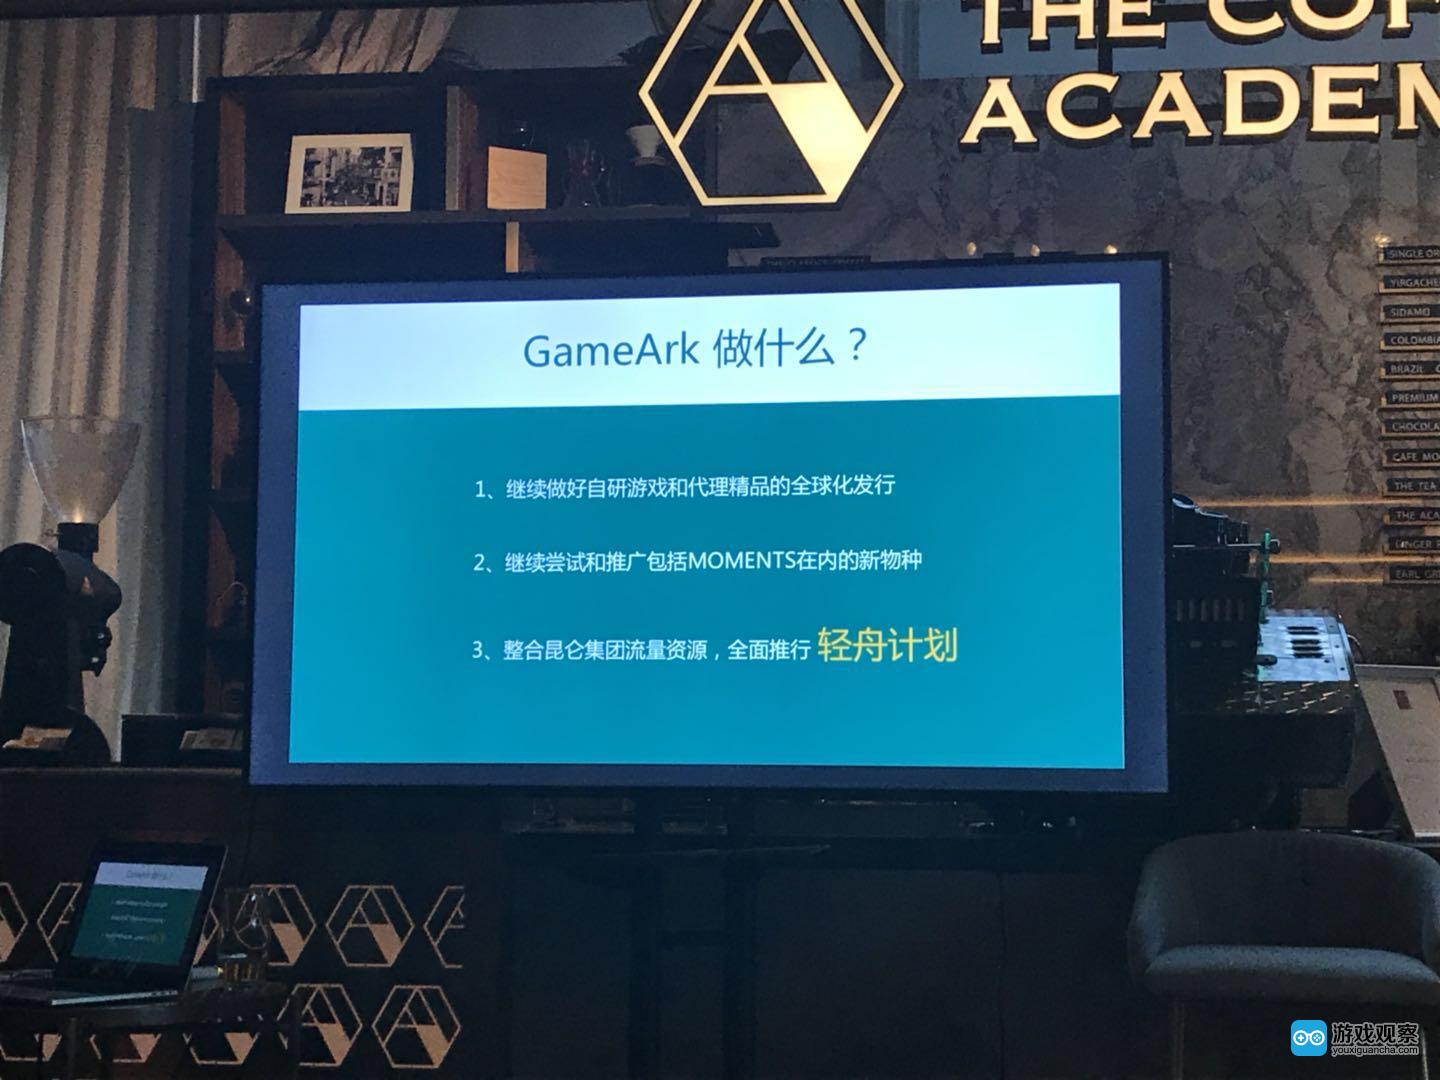 昆仑游戏发布新品牌“GameArk” 协同集团产品矩阵力推“轻舟计划”